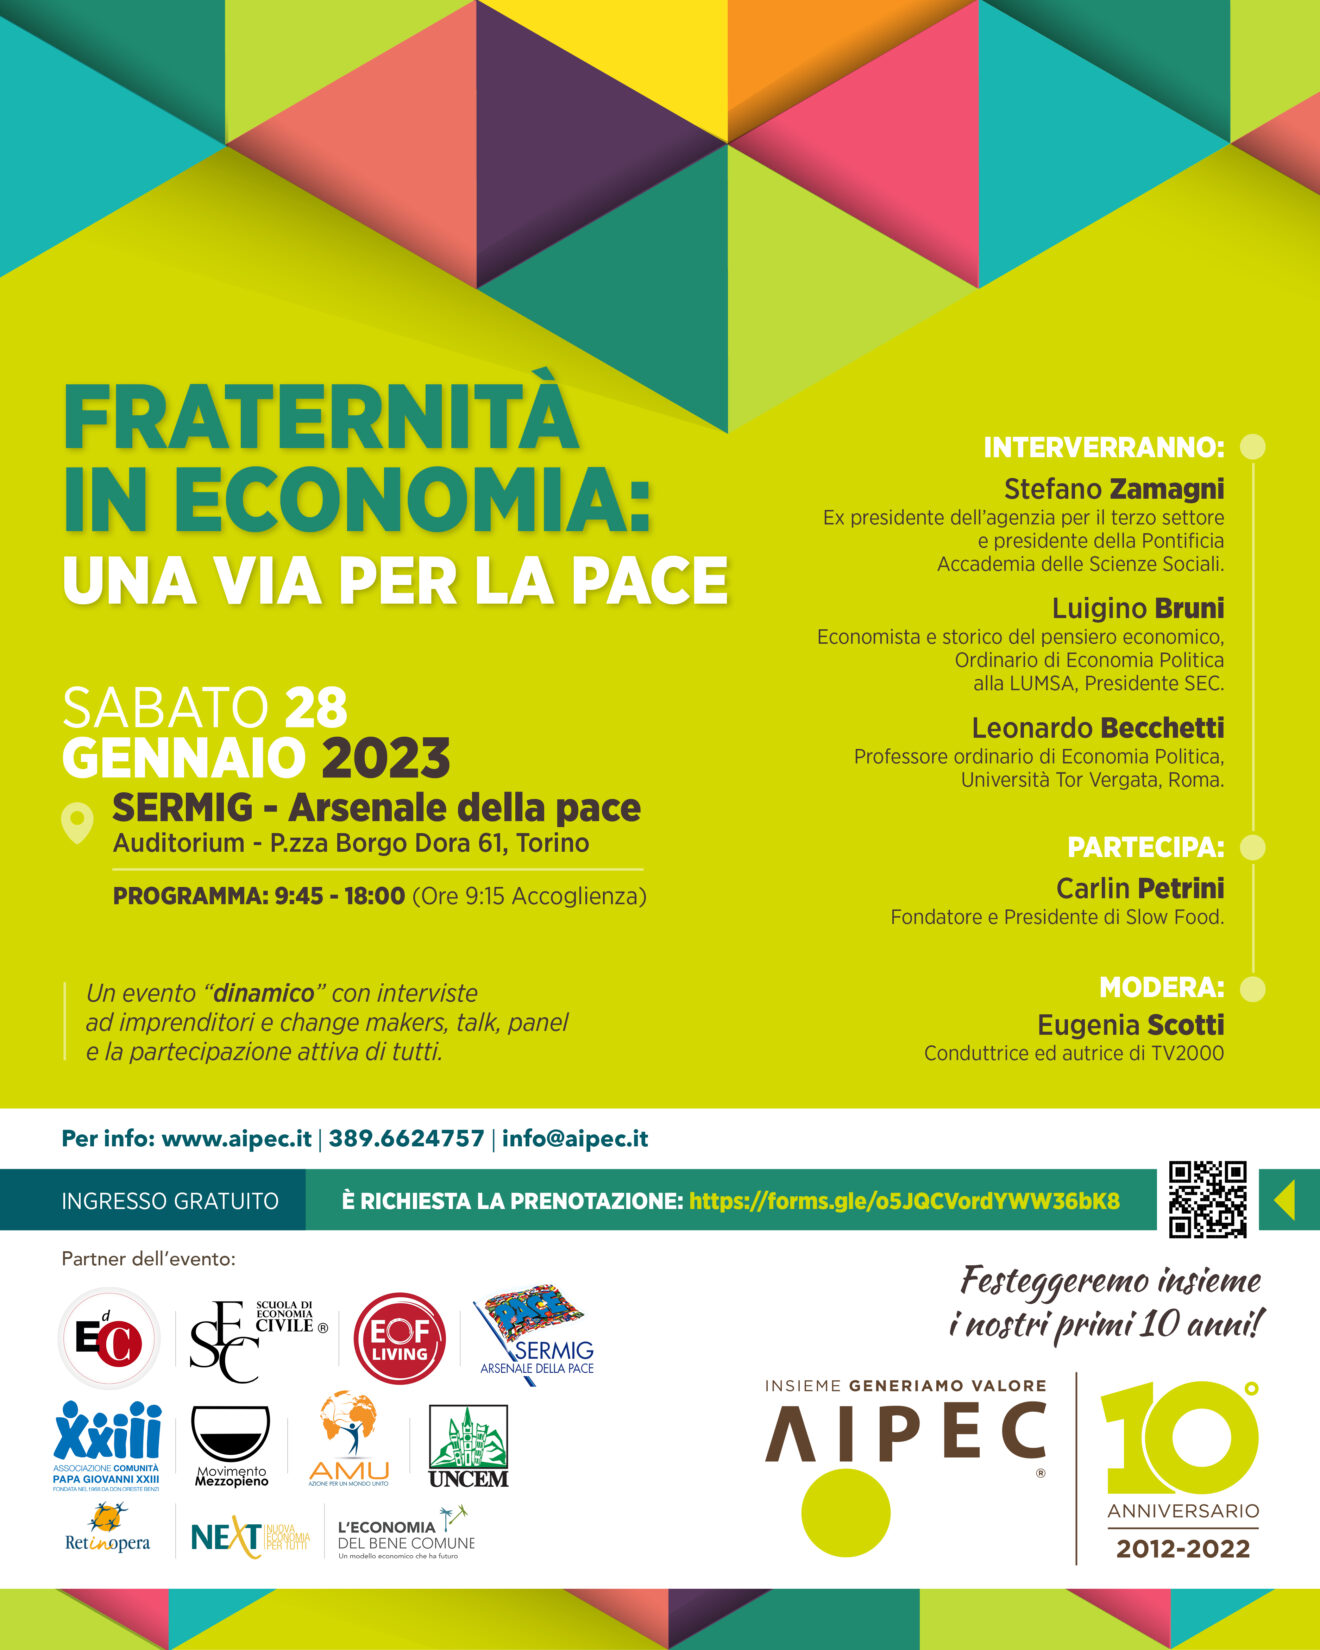 AIPEC, Associazione Italiana Imprenditori per un’Economia di Comunione festeggia i suoi 10 anni